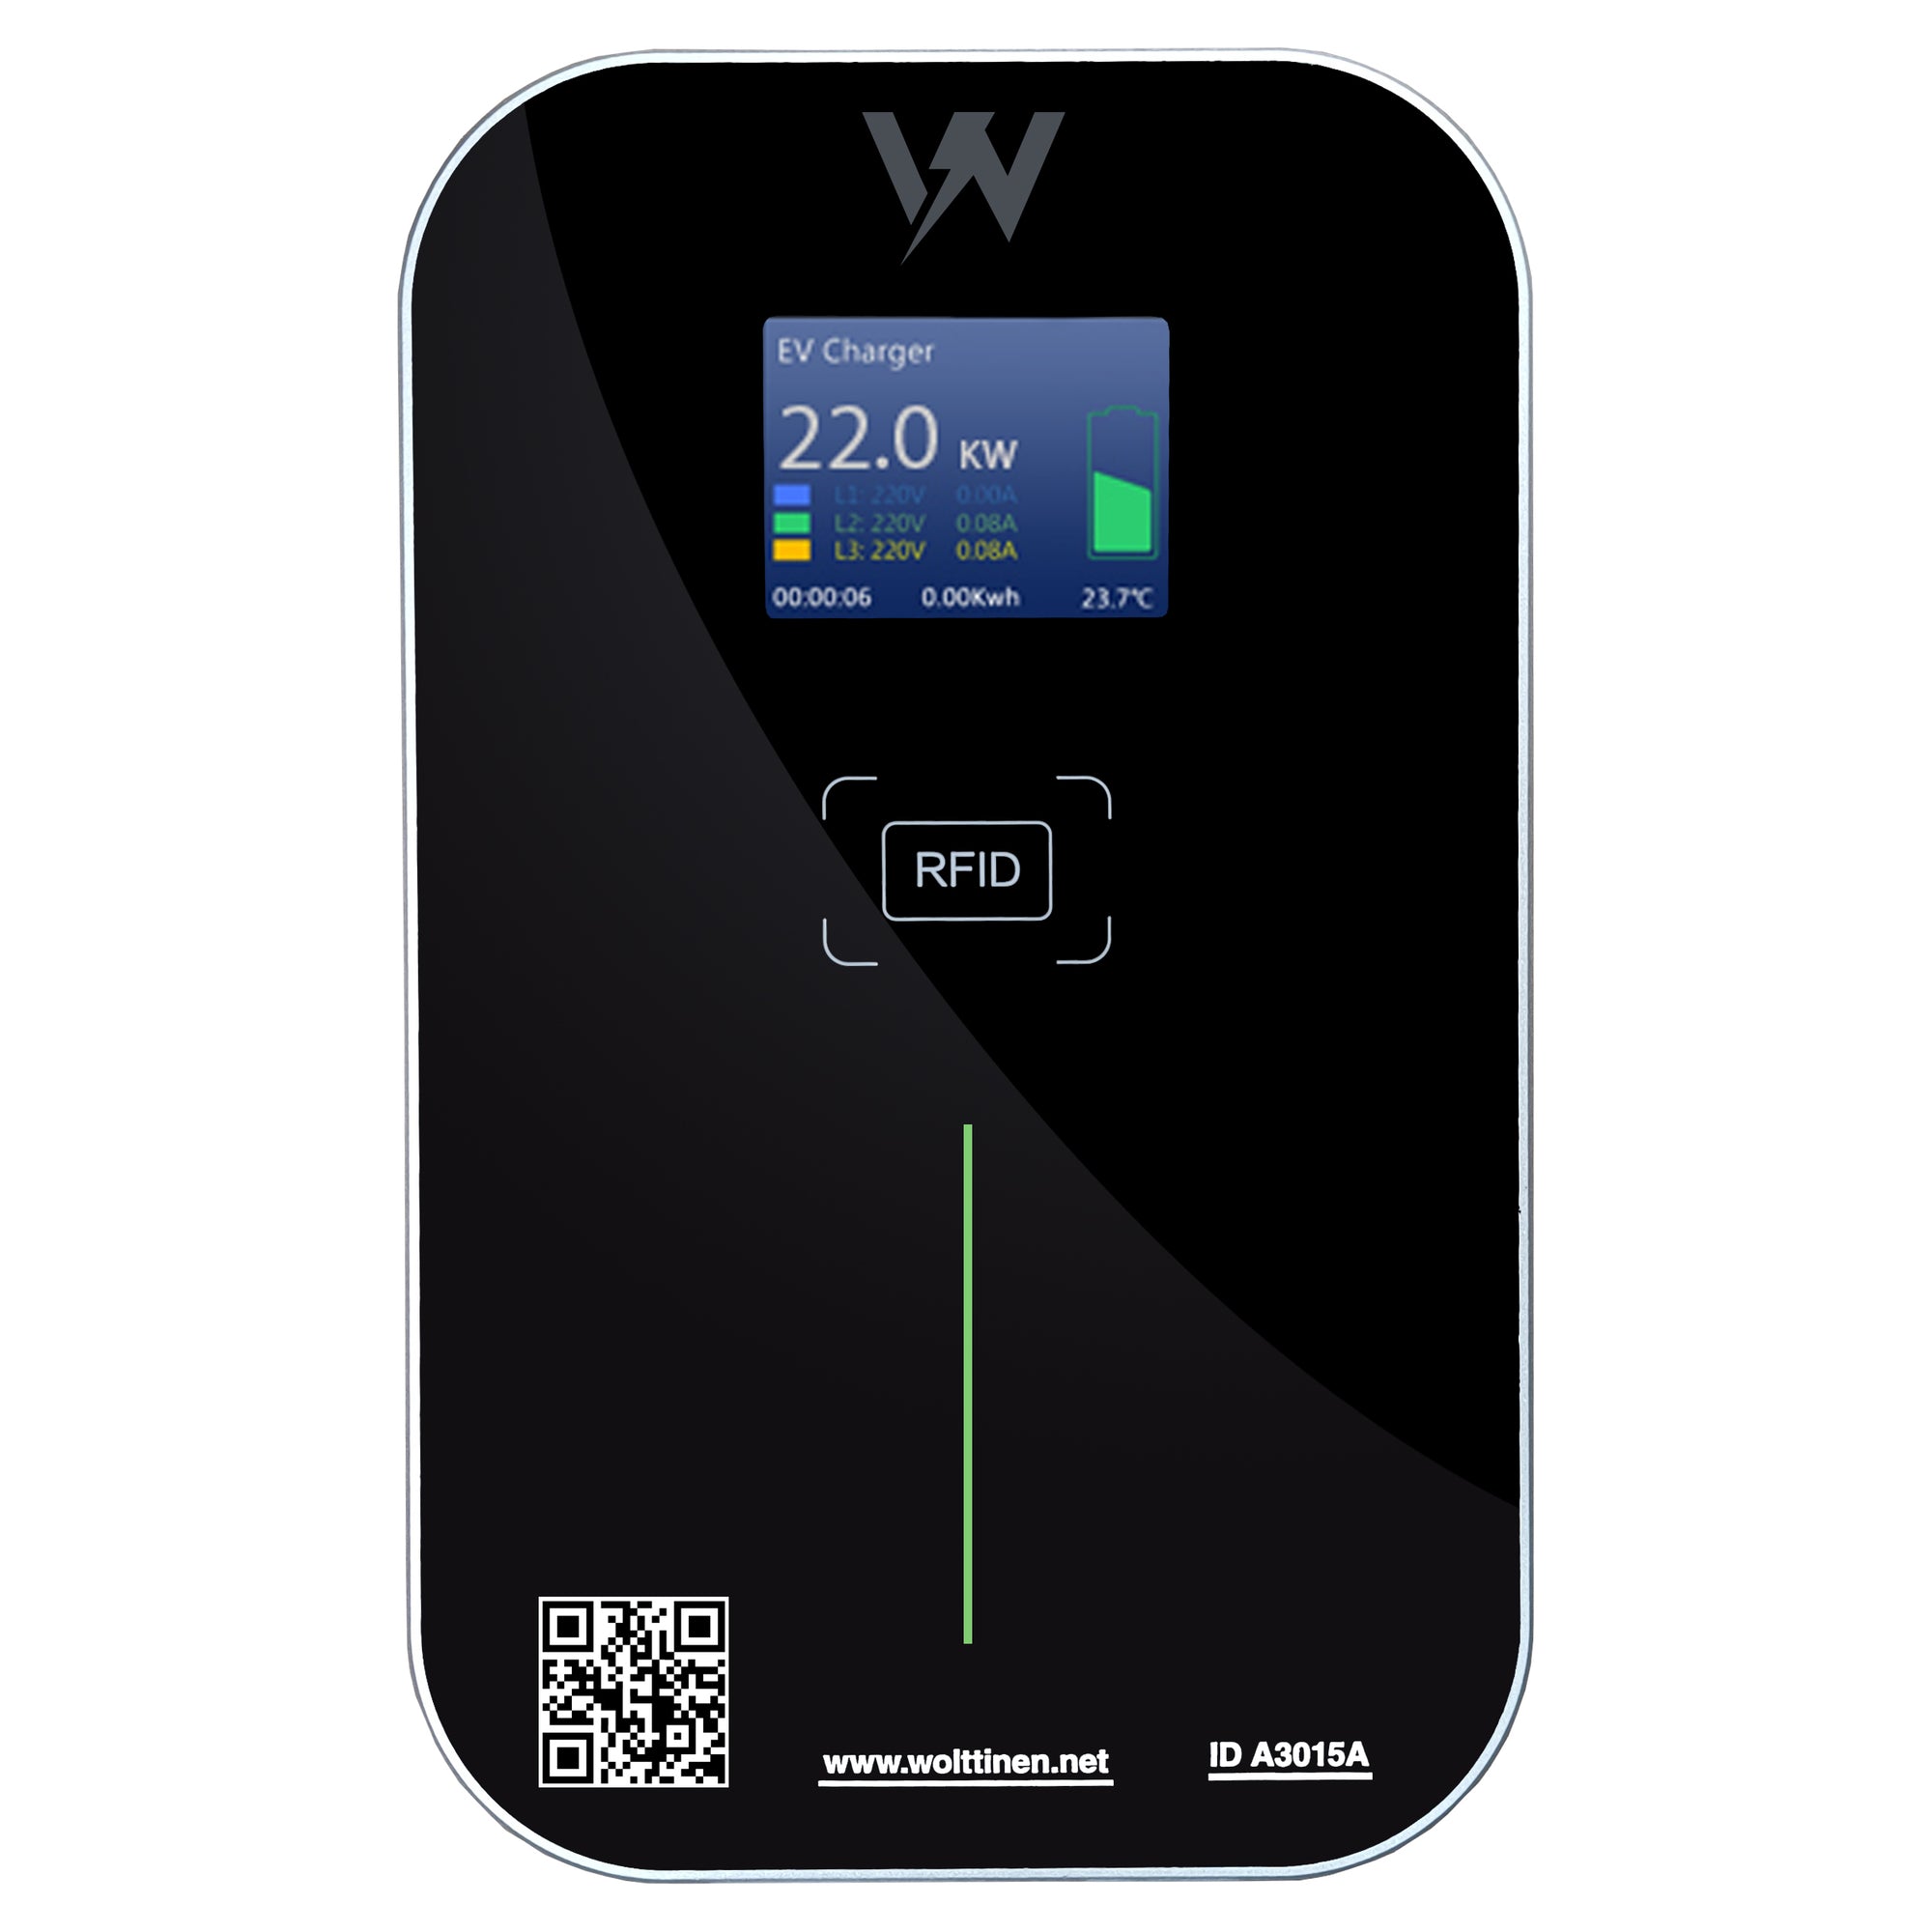 Wolttinen XL Pro Wallbox - Wolttinen